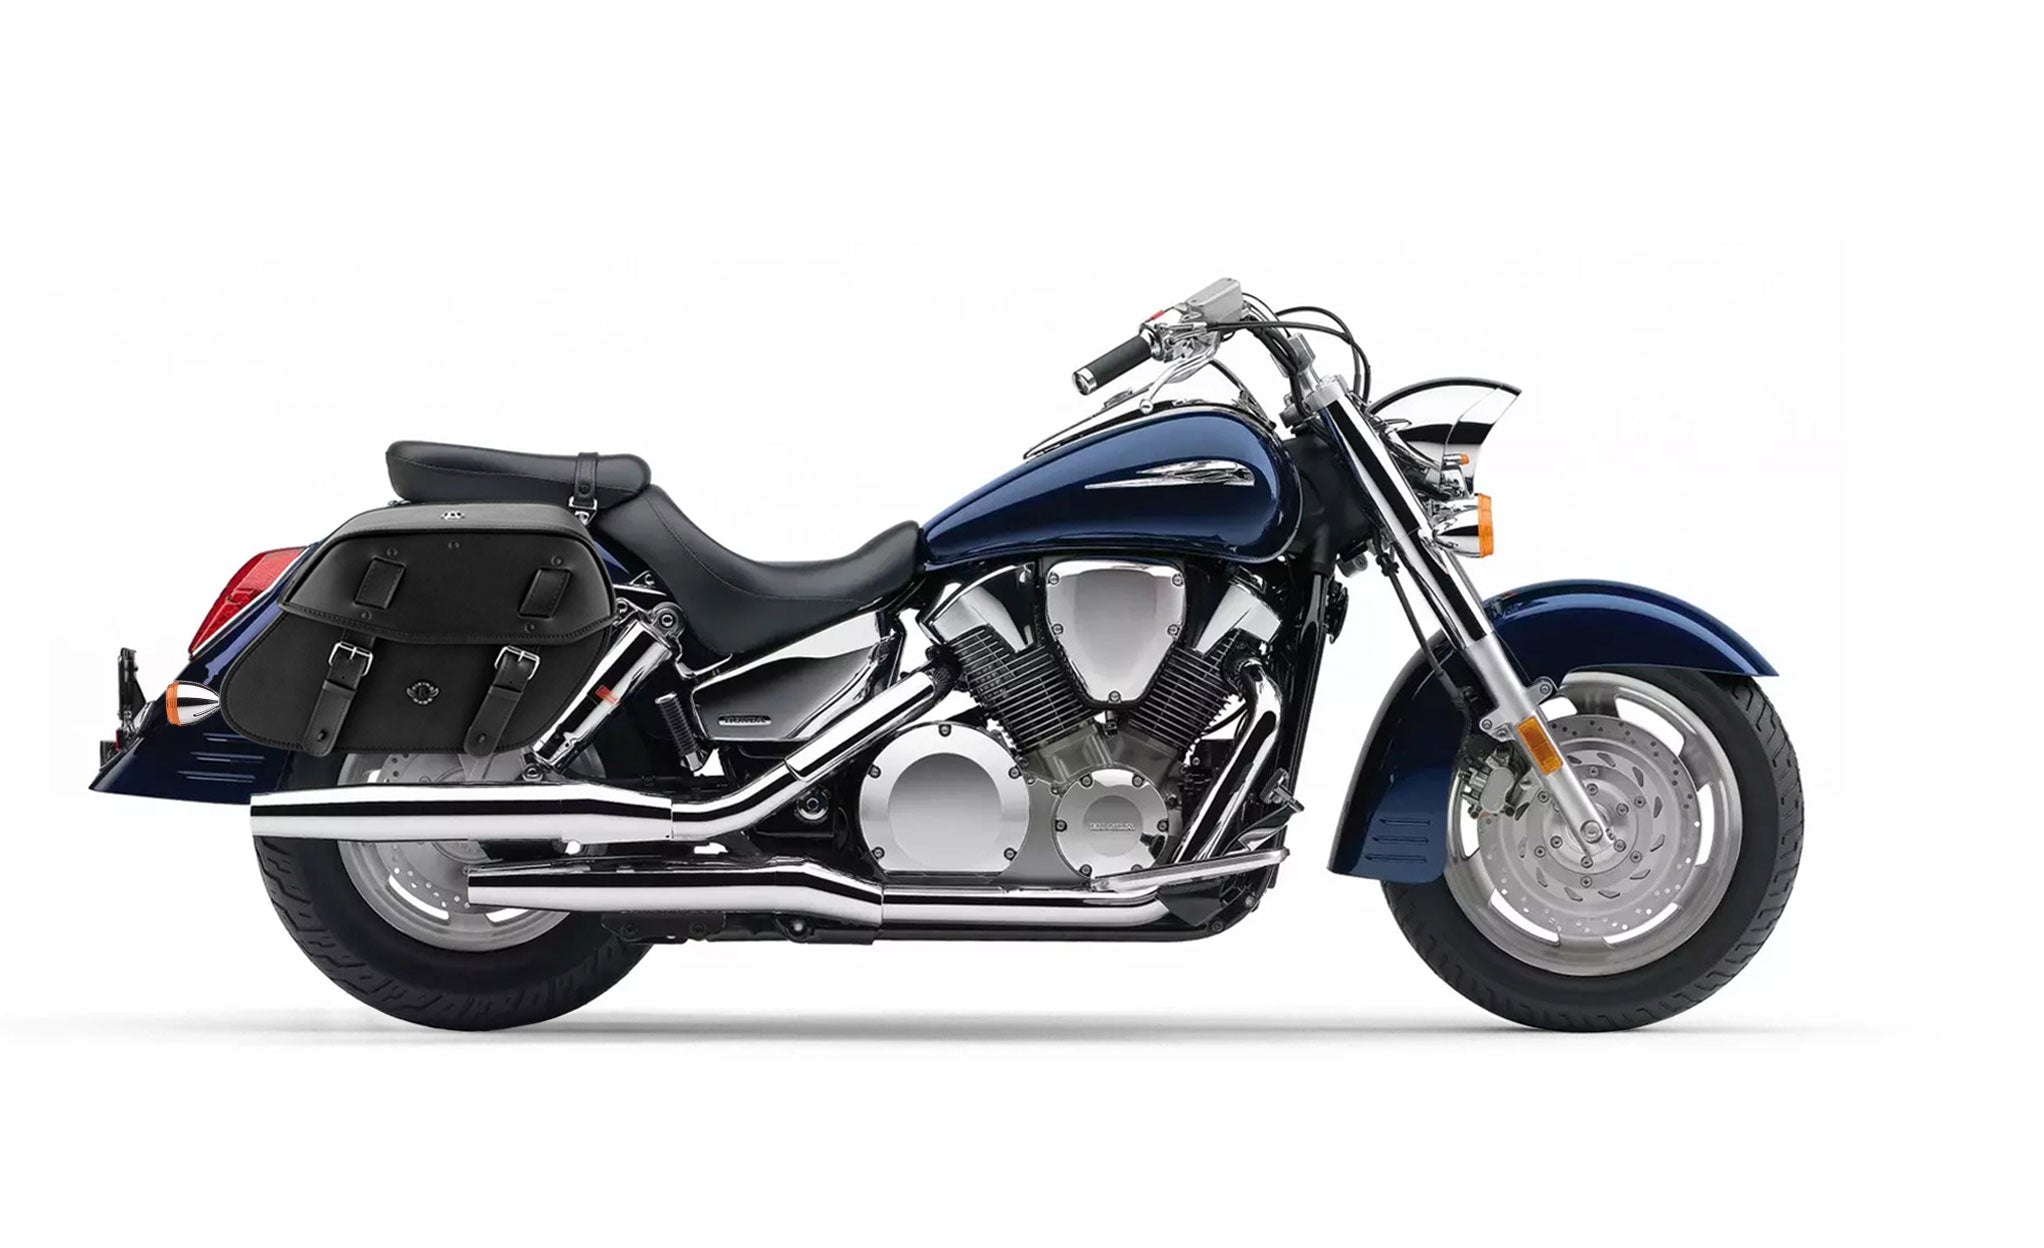 Viking Odin Large Honda Vtx 1300 R Retro Leather Motorcycle Saddlebags on Bike Photo @expand